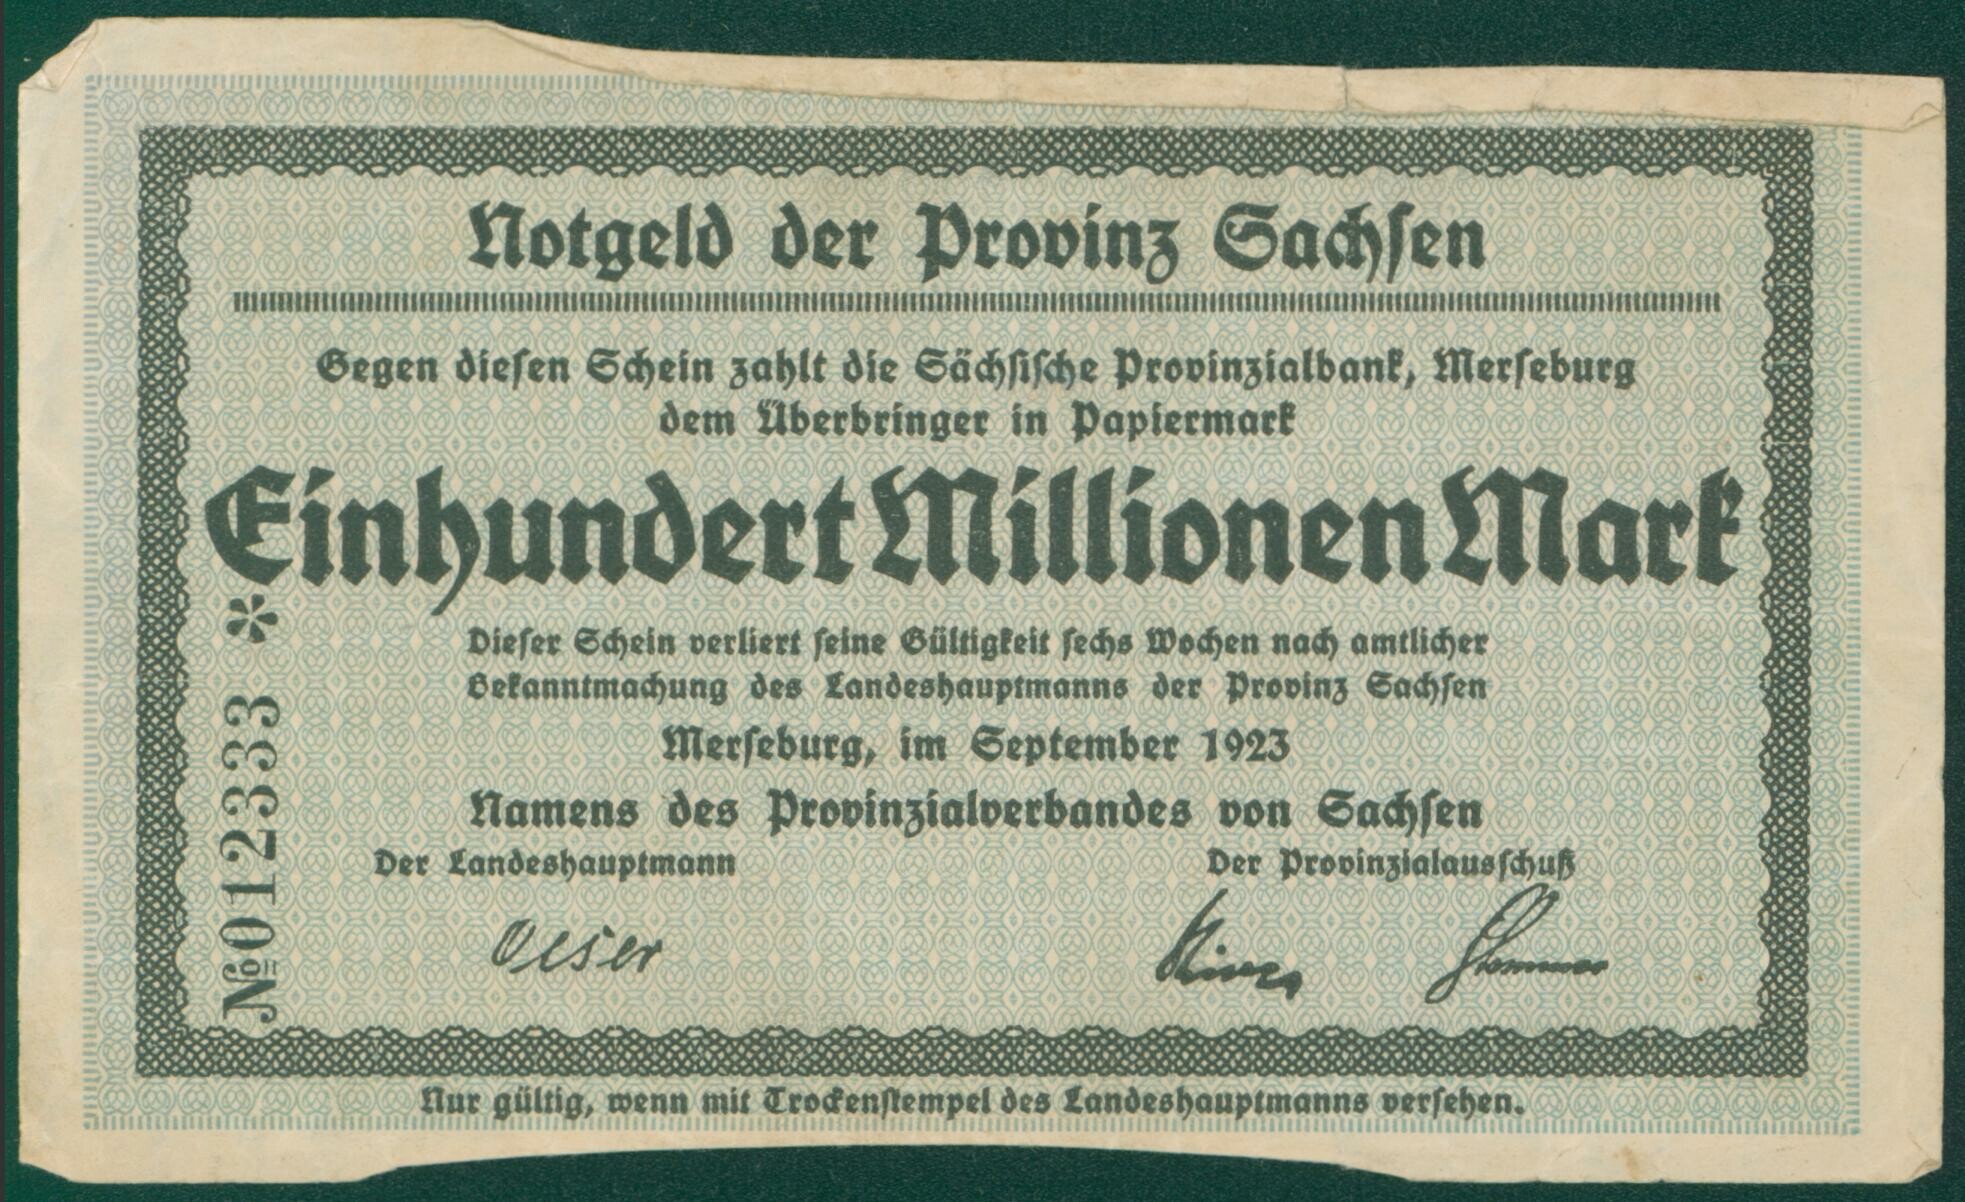 Notgeldschein der Provinz Sachsen "Einhundert Millionen Mark", No. 012333 (Kulturhistorisches Museum Schloss Merseburg CC BY-NC-SA)